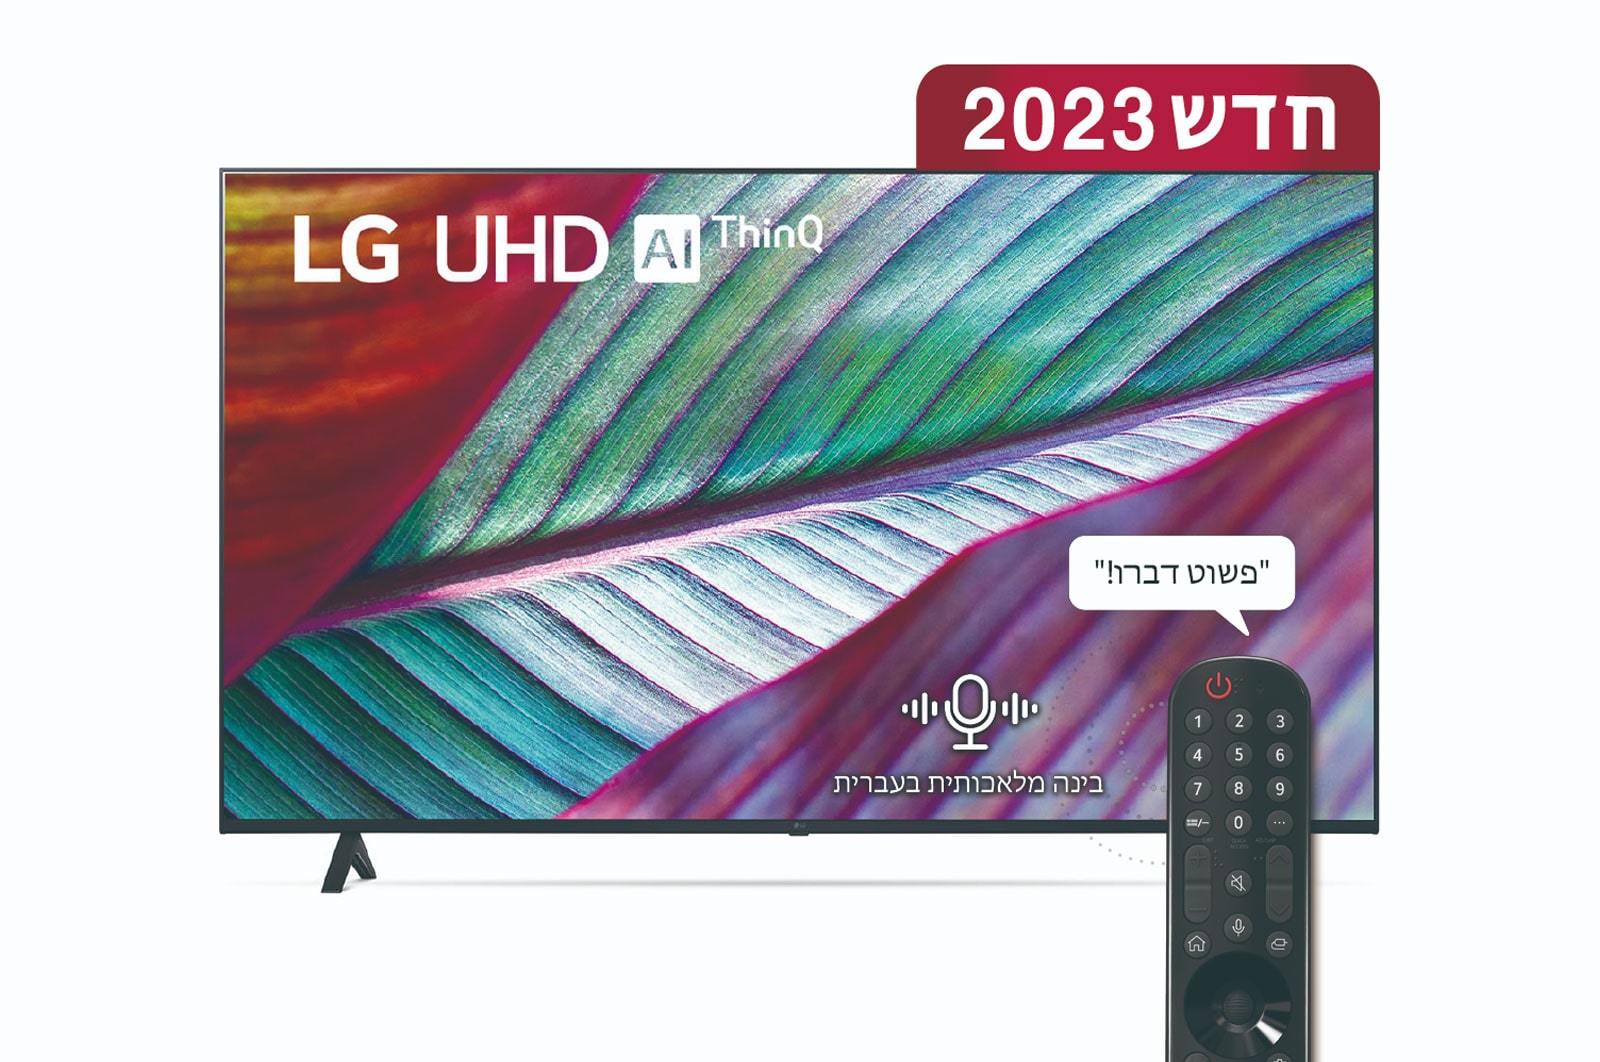 LG טלוויזיה חכמה LG UHD UR78 בגודל 75 אינץ‘ וברזולוציית 4K, 2023, מבט קדמי של טלוויזיית LG UHDl, 75UR78006LL